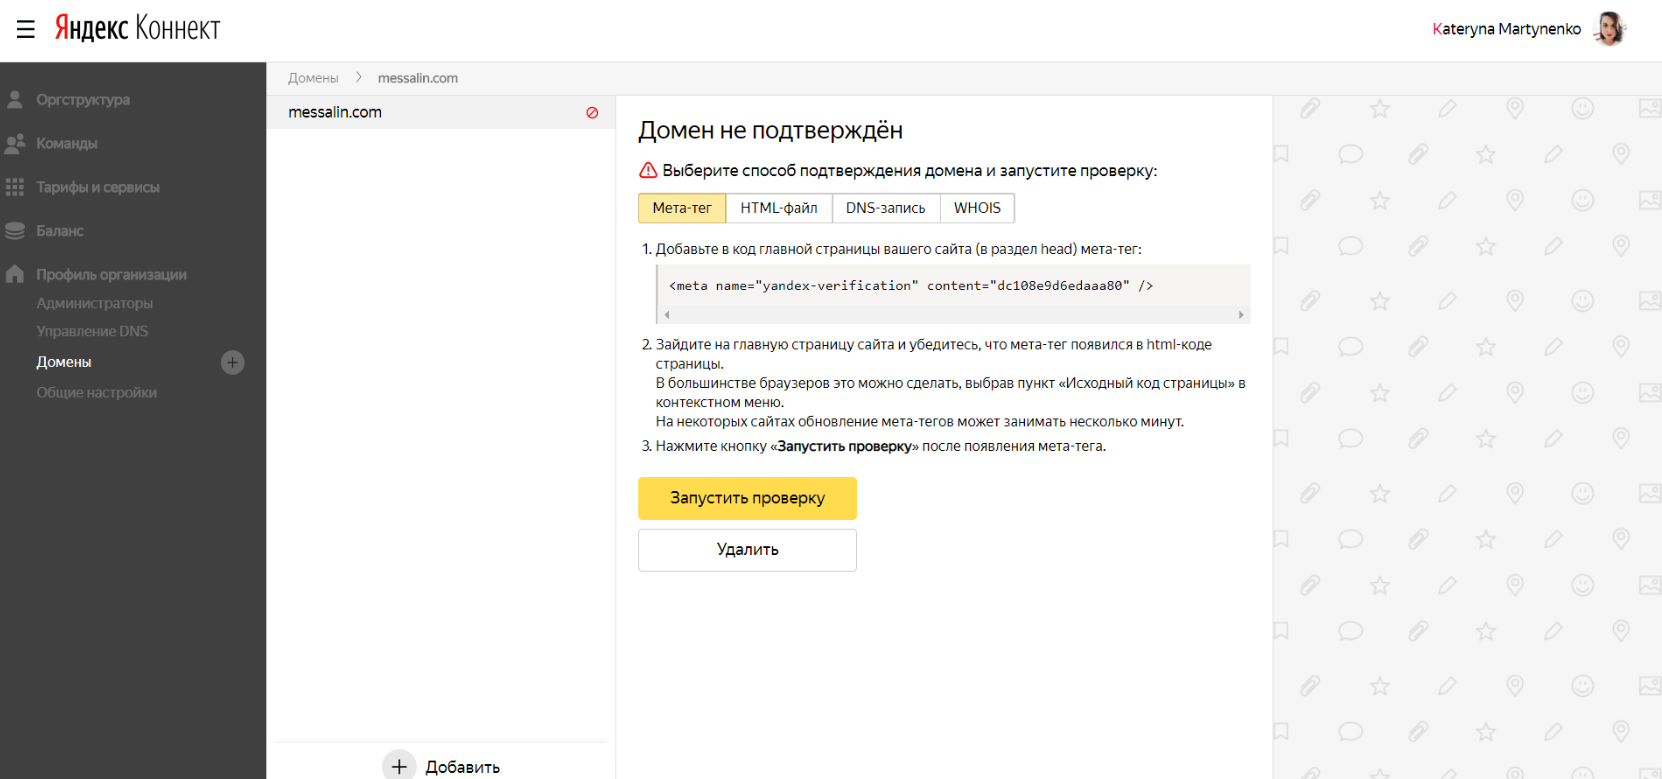 Подтверждение домена в Яндекс.Коннект